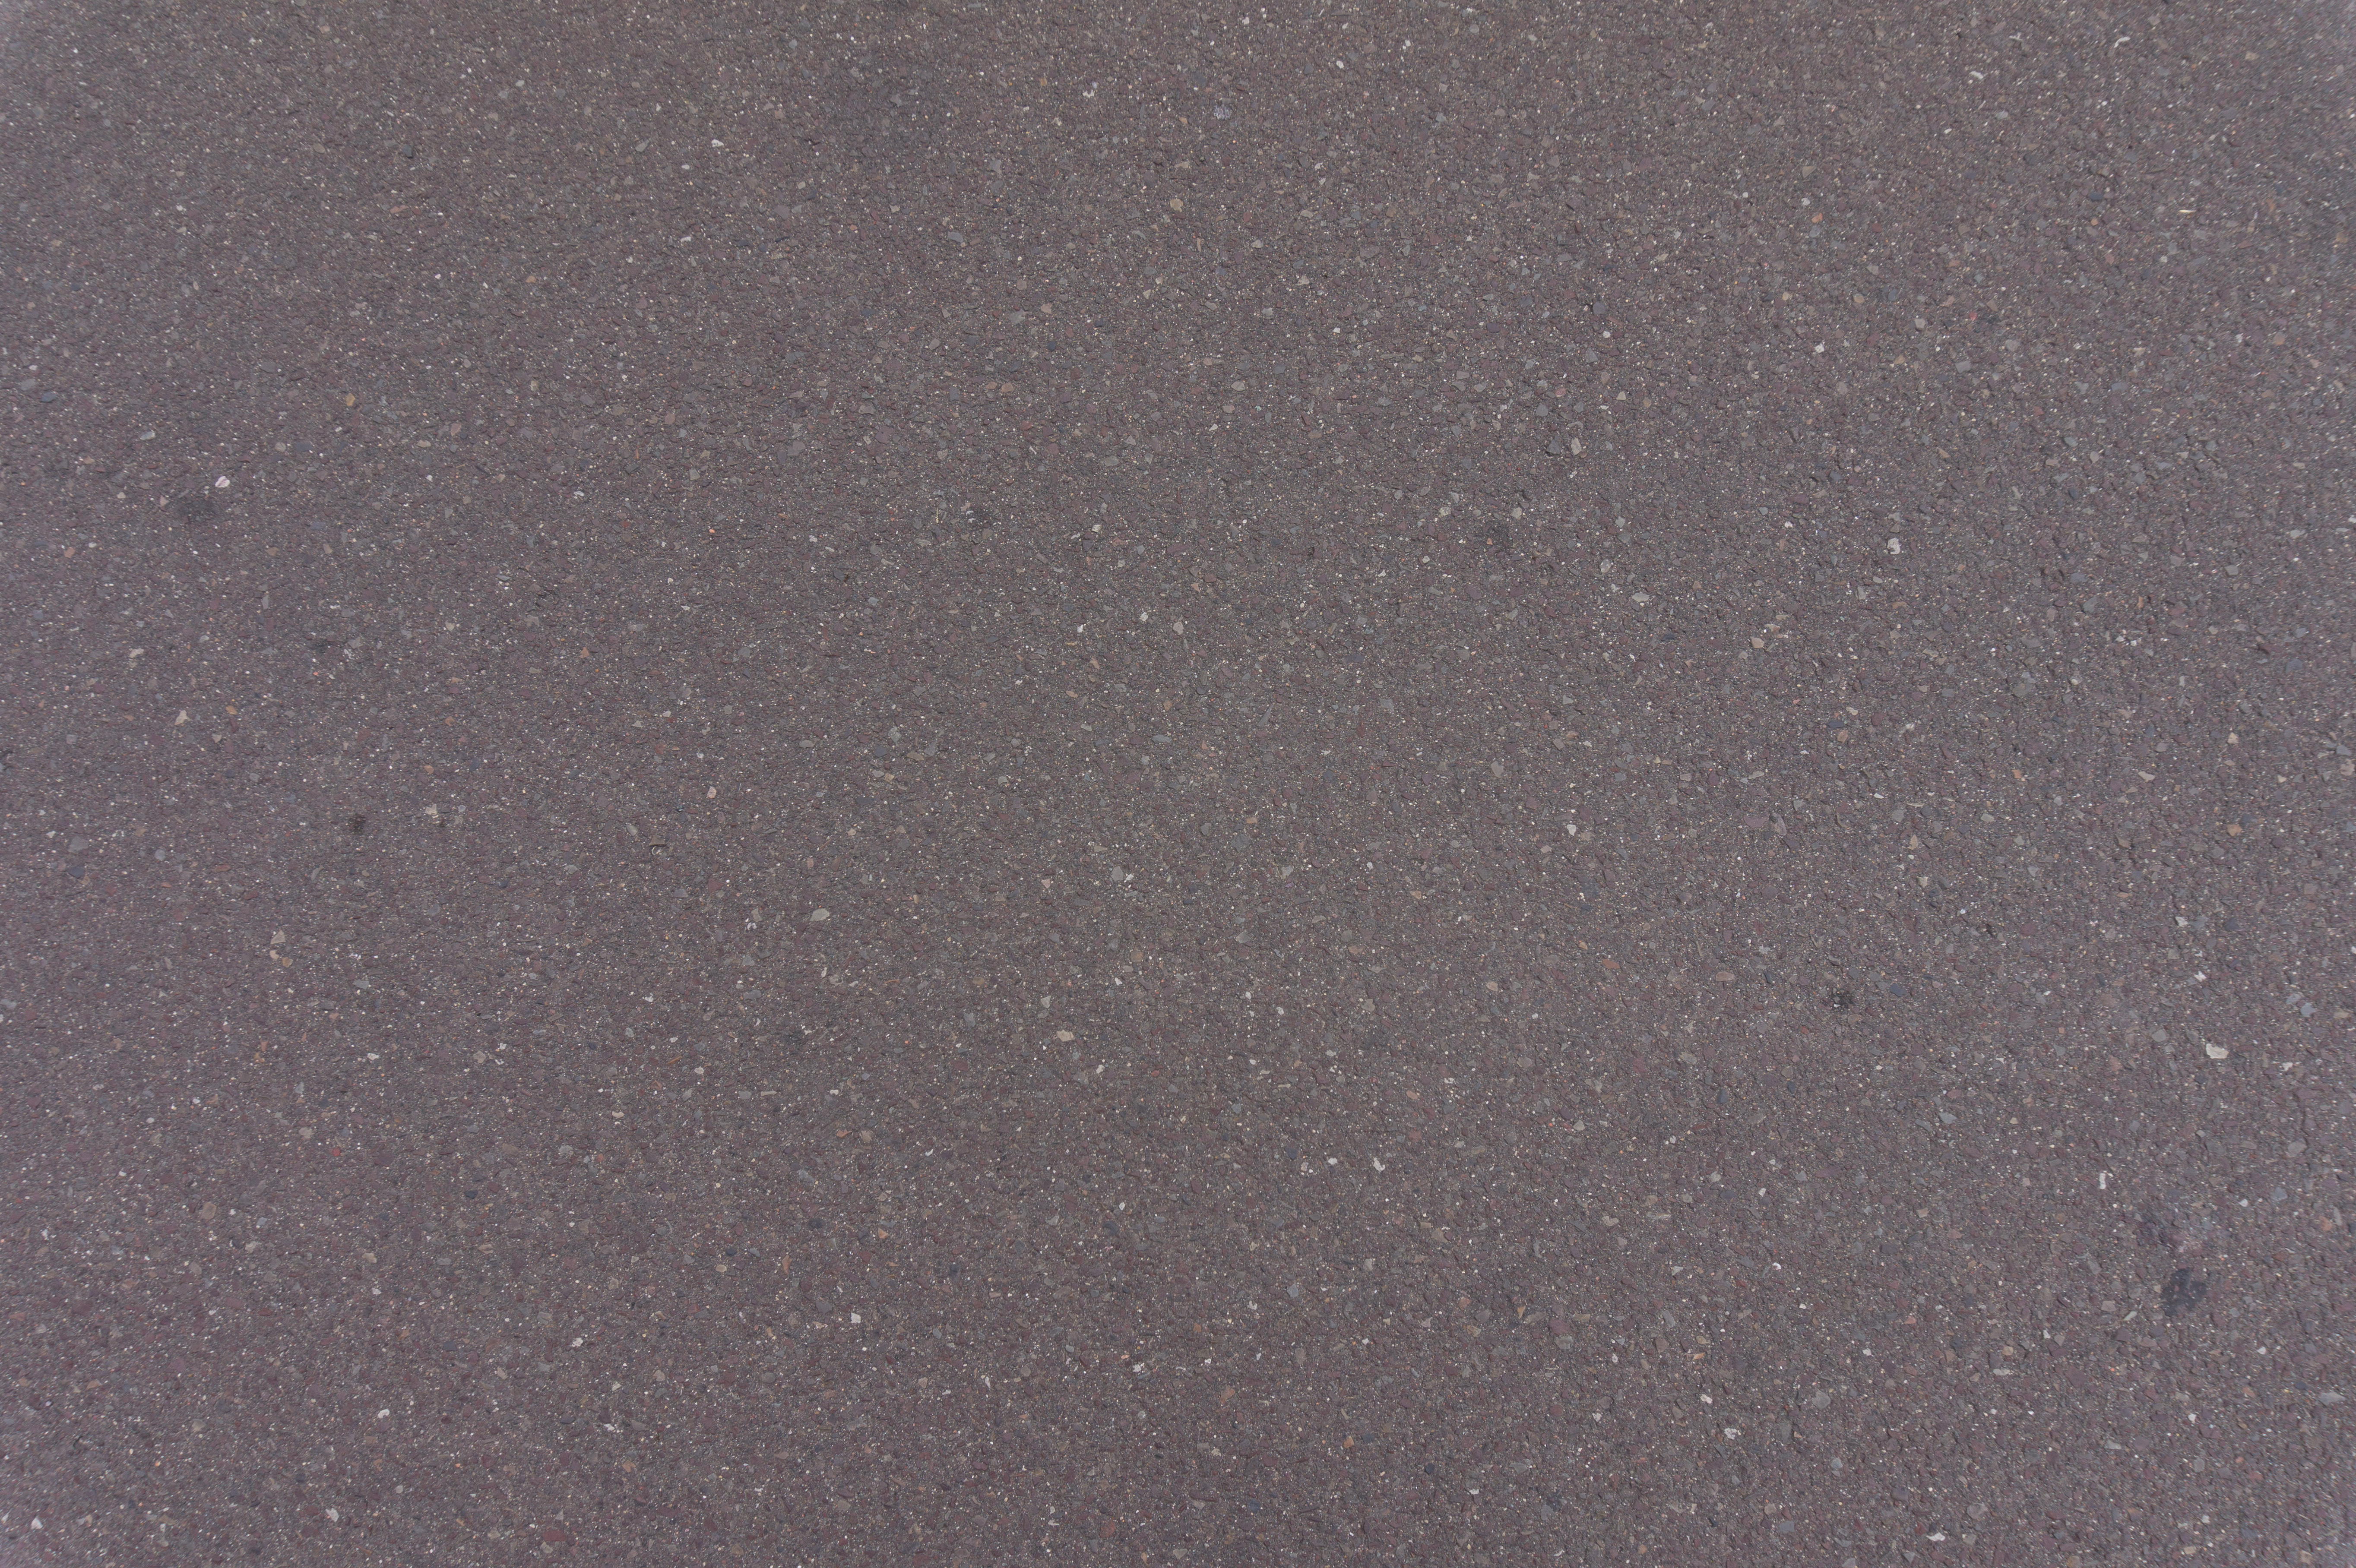 М5 asphalt